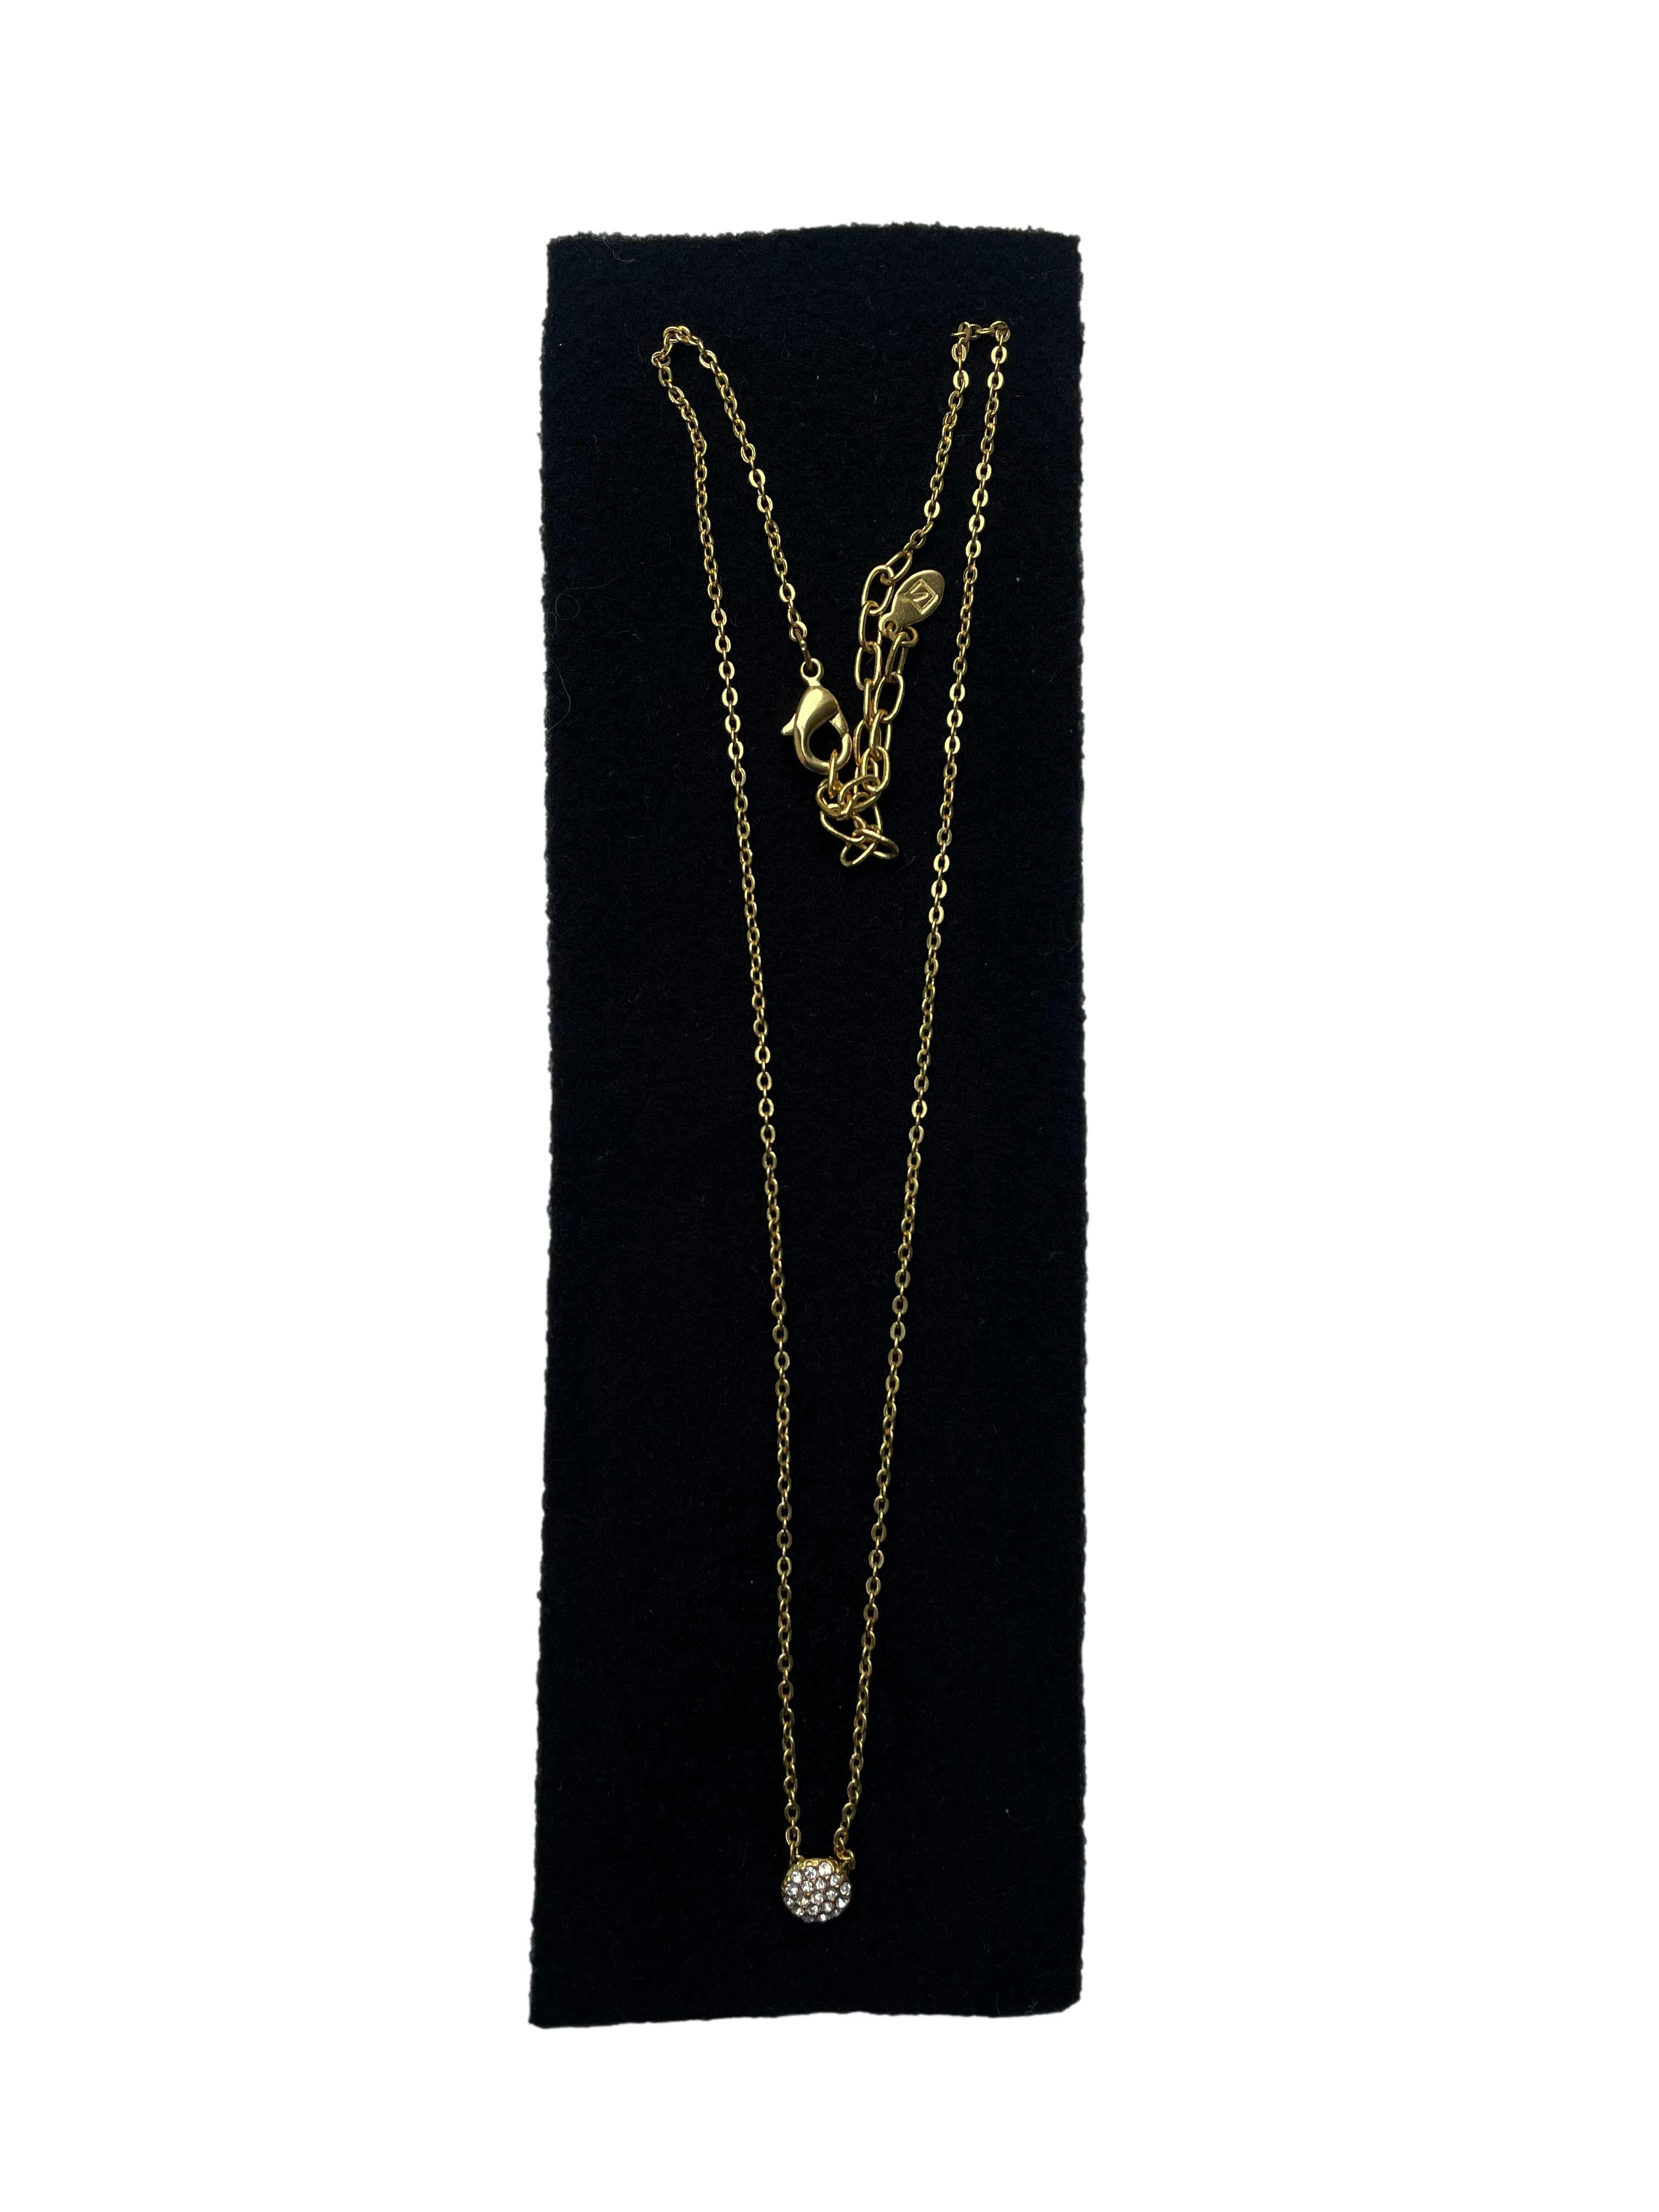 Collar Yanbal cadena delgada bañada en oro con dije aplicaciones diamante. Largo 50cm